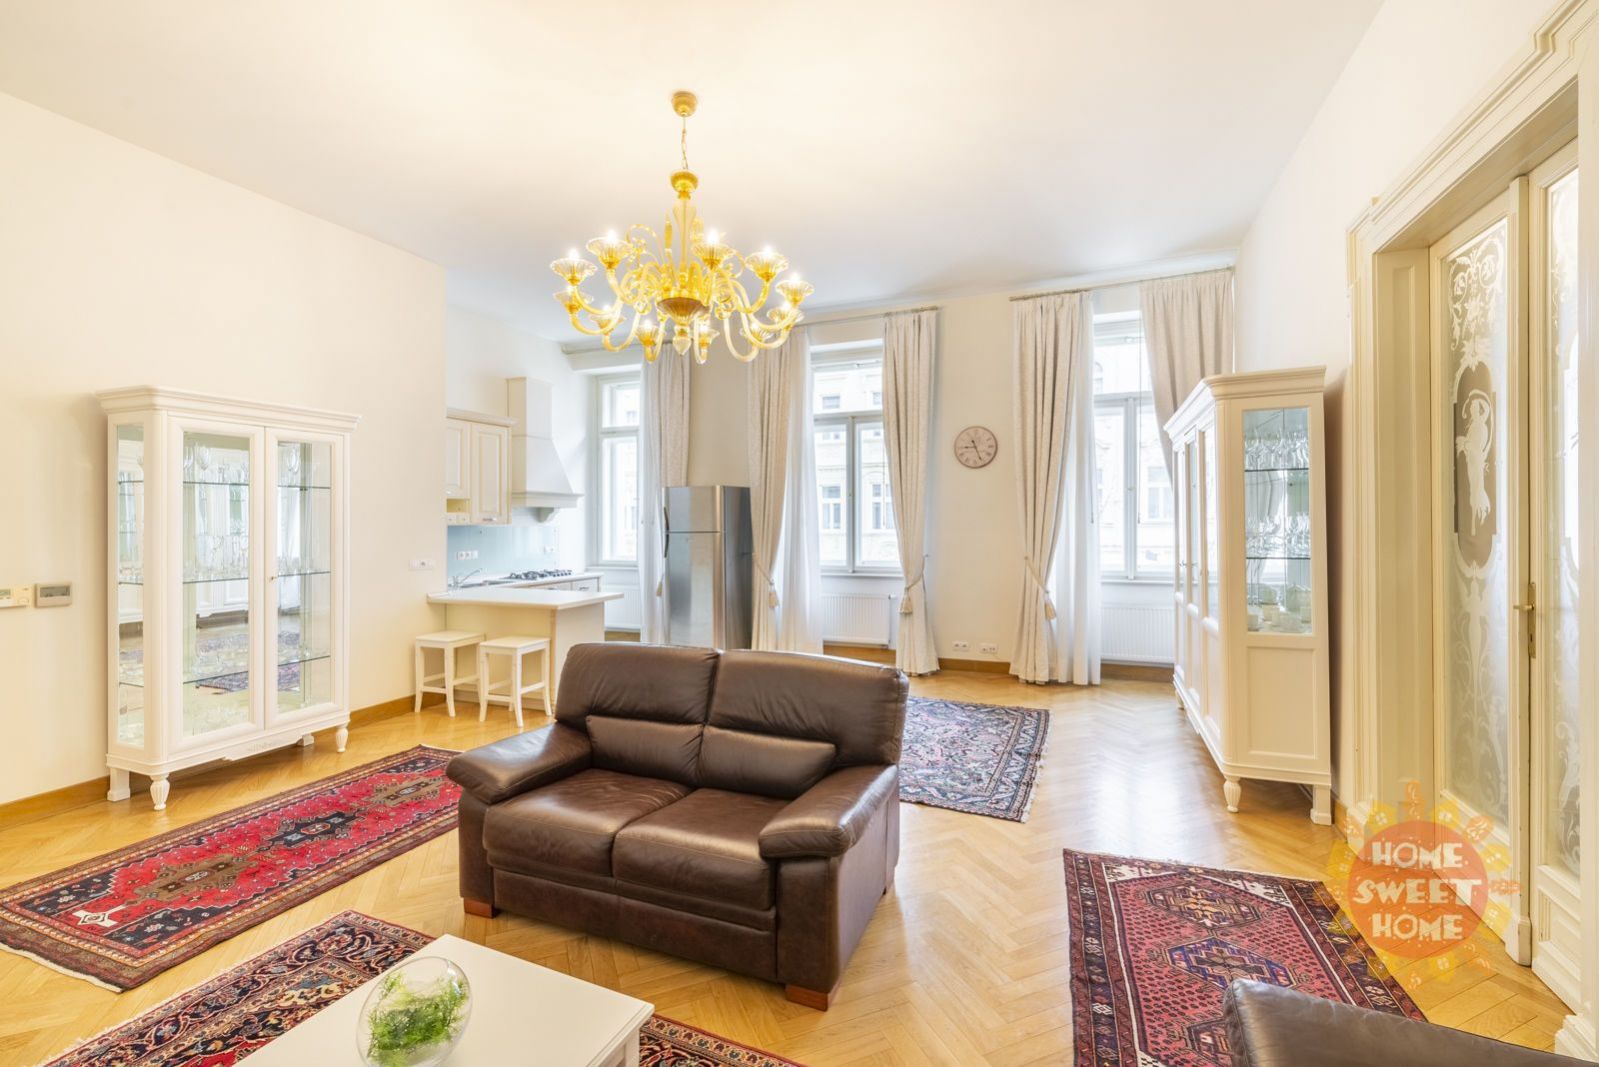 Pronájem Praha, luxusní kompletně zařízený byt 3+kk, 94m2, bazén, klimatizace, Vinohrady